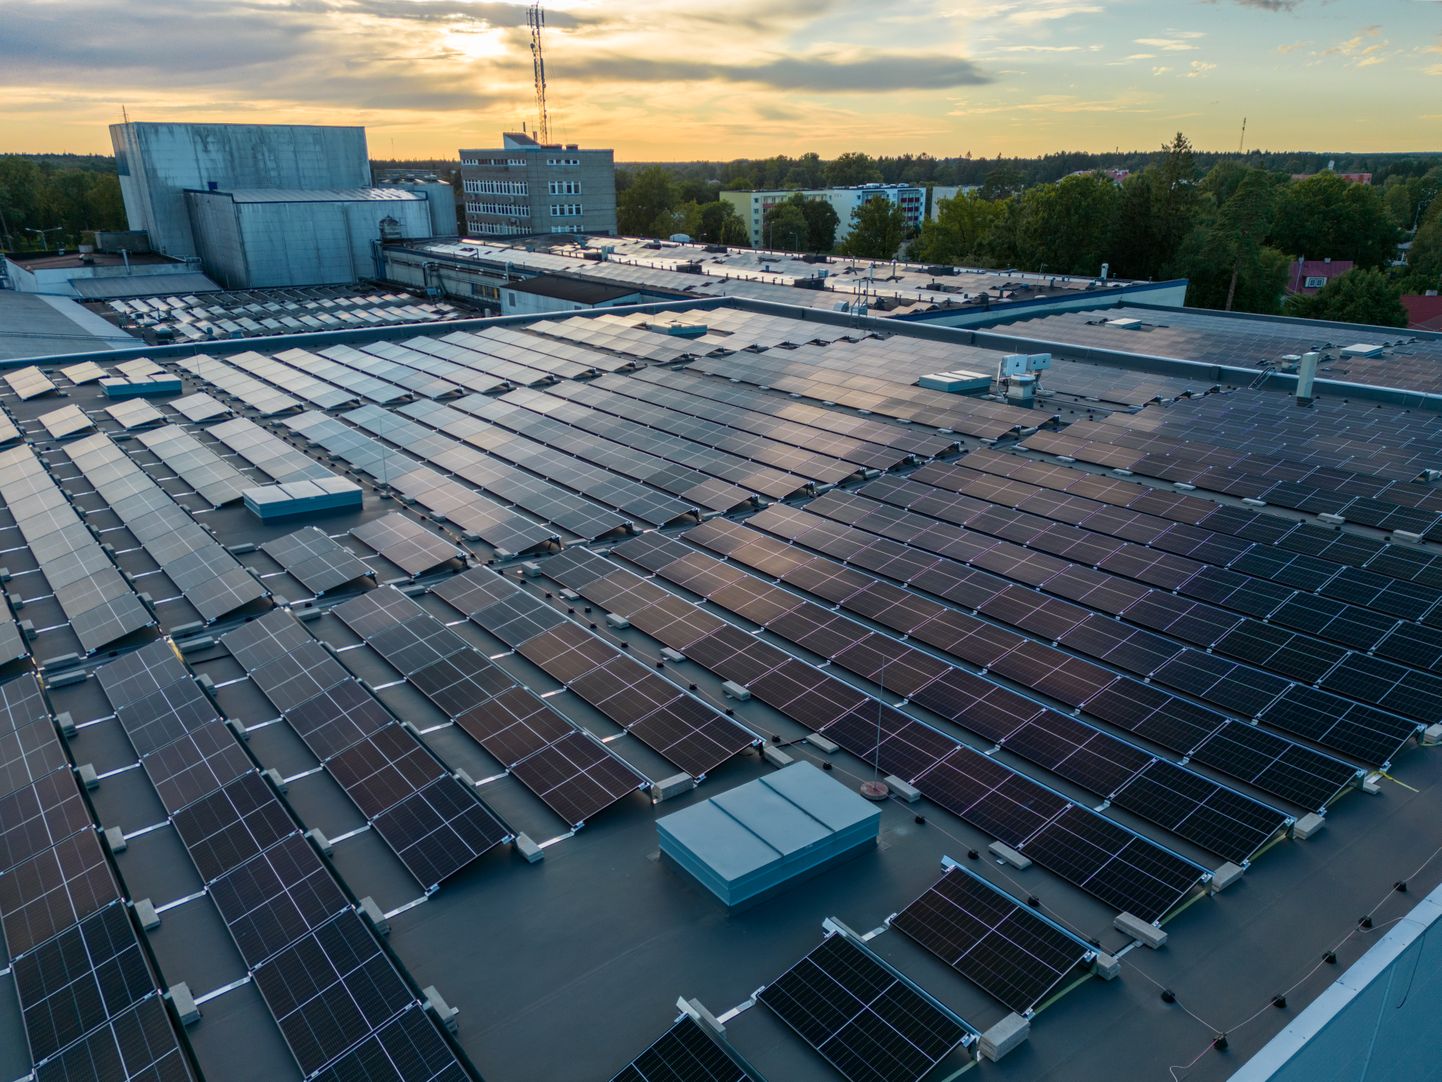 Ainsat lahendust suurtest elektriarvetest pääsemiseks näeb ettevõtja oma päikesepargi rajamises. Pildil Saku Õlletehase päikesepark, mis toodab ilusal päikeselisel suvepäeval  9 MW ja vähem päikeselisel suvepäeval 4 MW elektrit.